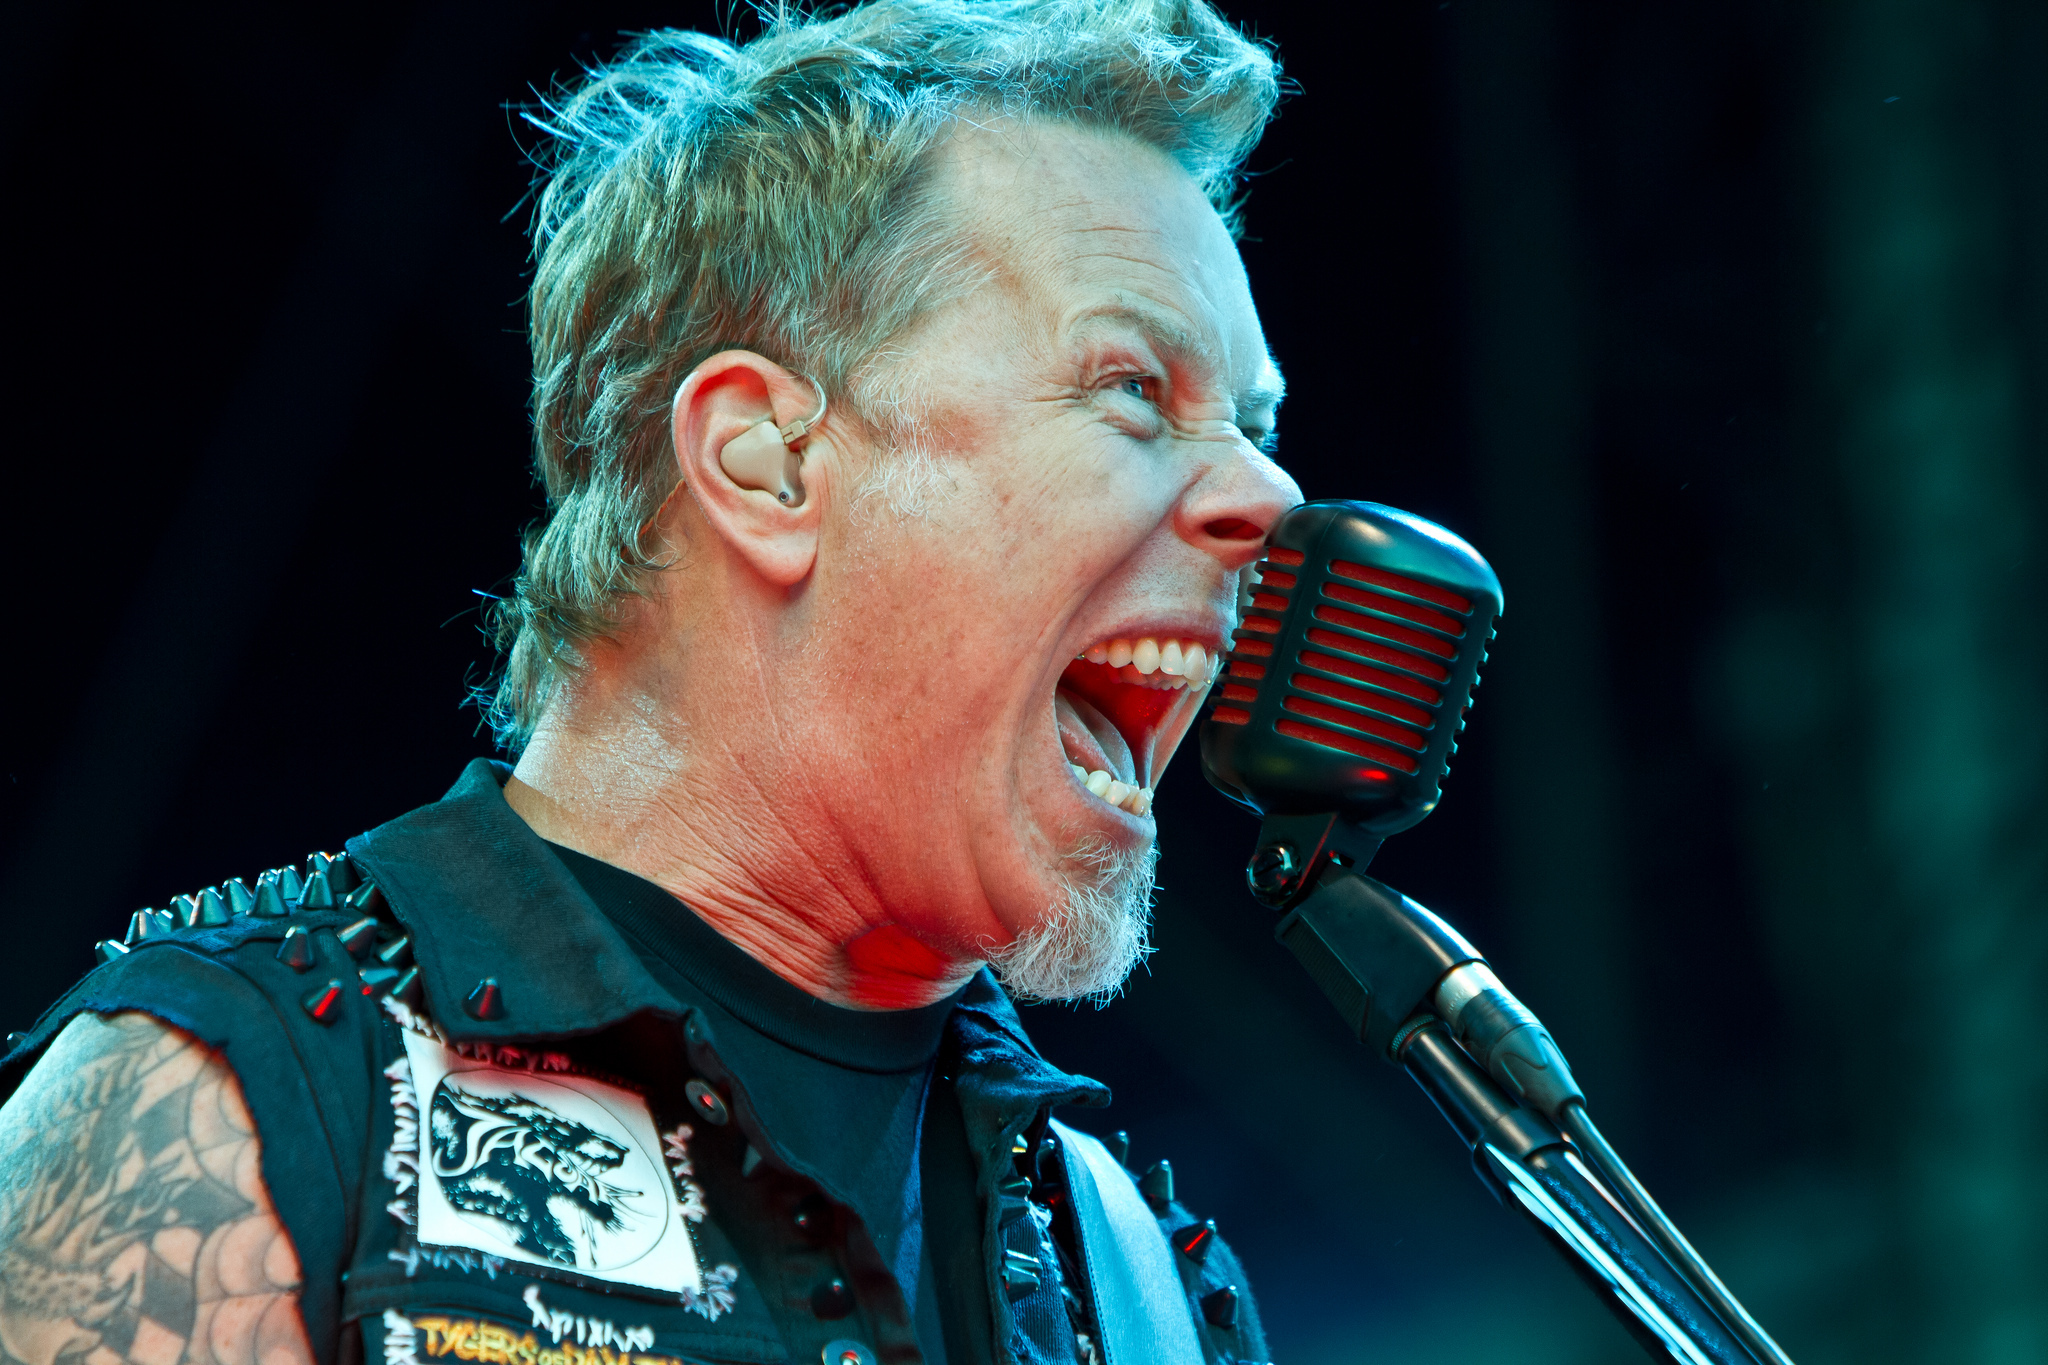 Una nueva especie de serpiente venenosa es nombrada como el vocalista de Metallica (FOTO)